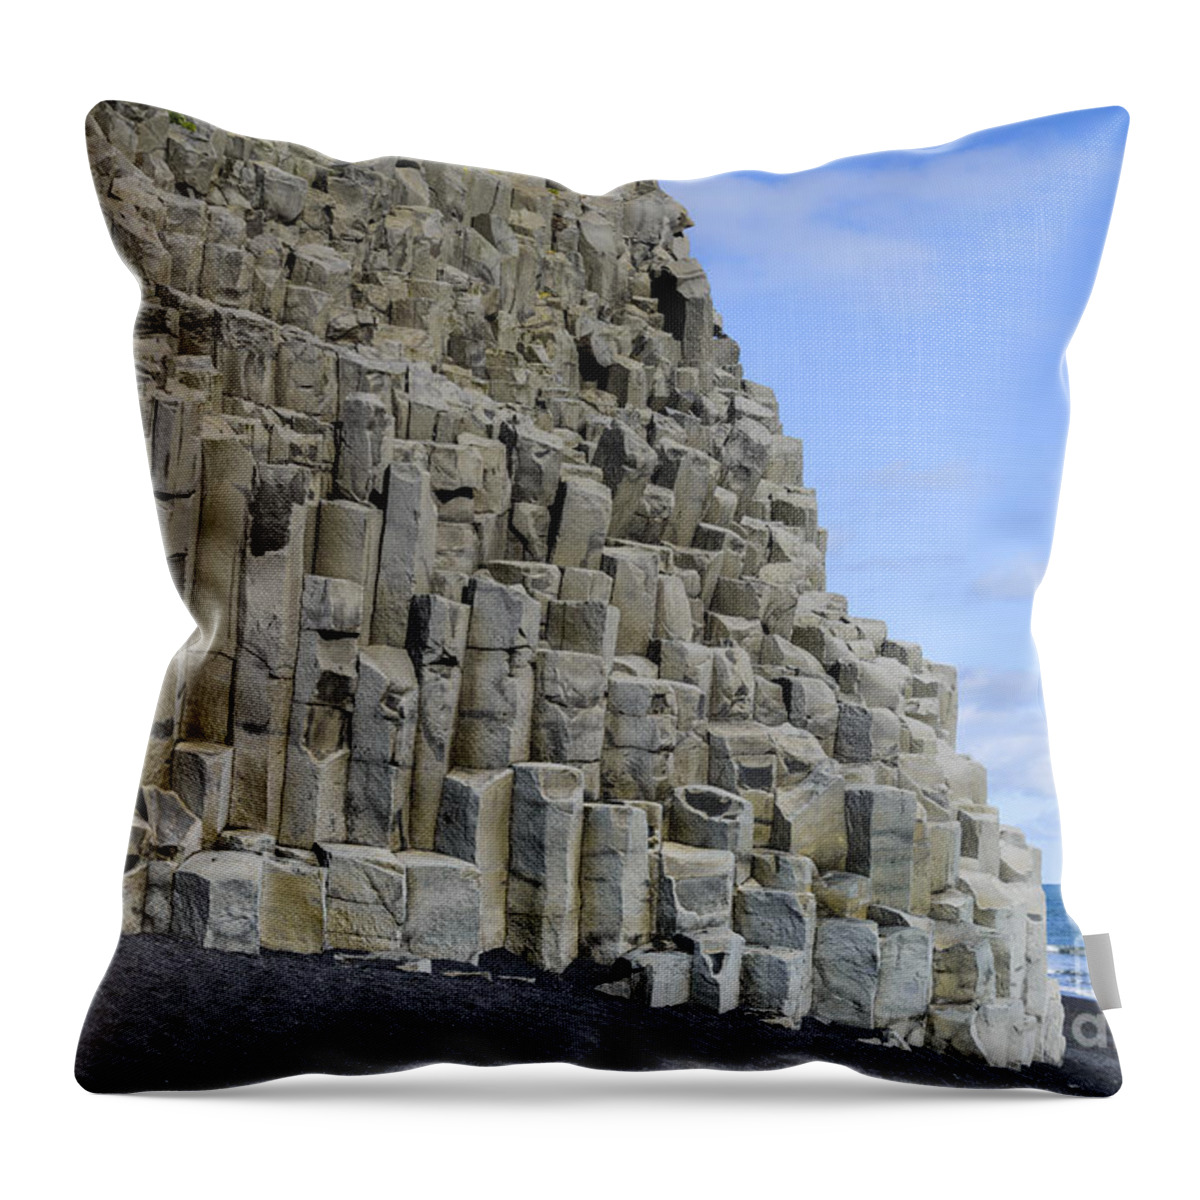 Basalt Throw Pillow featuring the photograph Basalt Columns, Iceland #1 by John Shaw